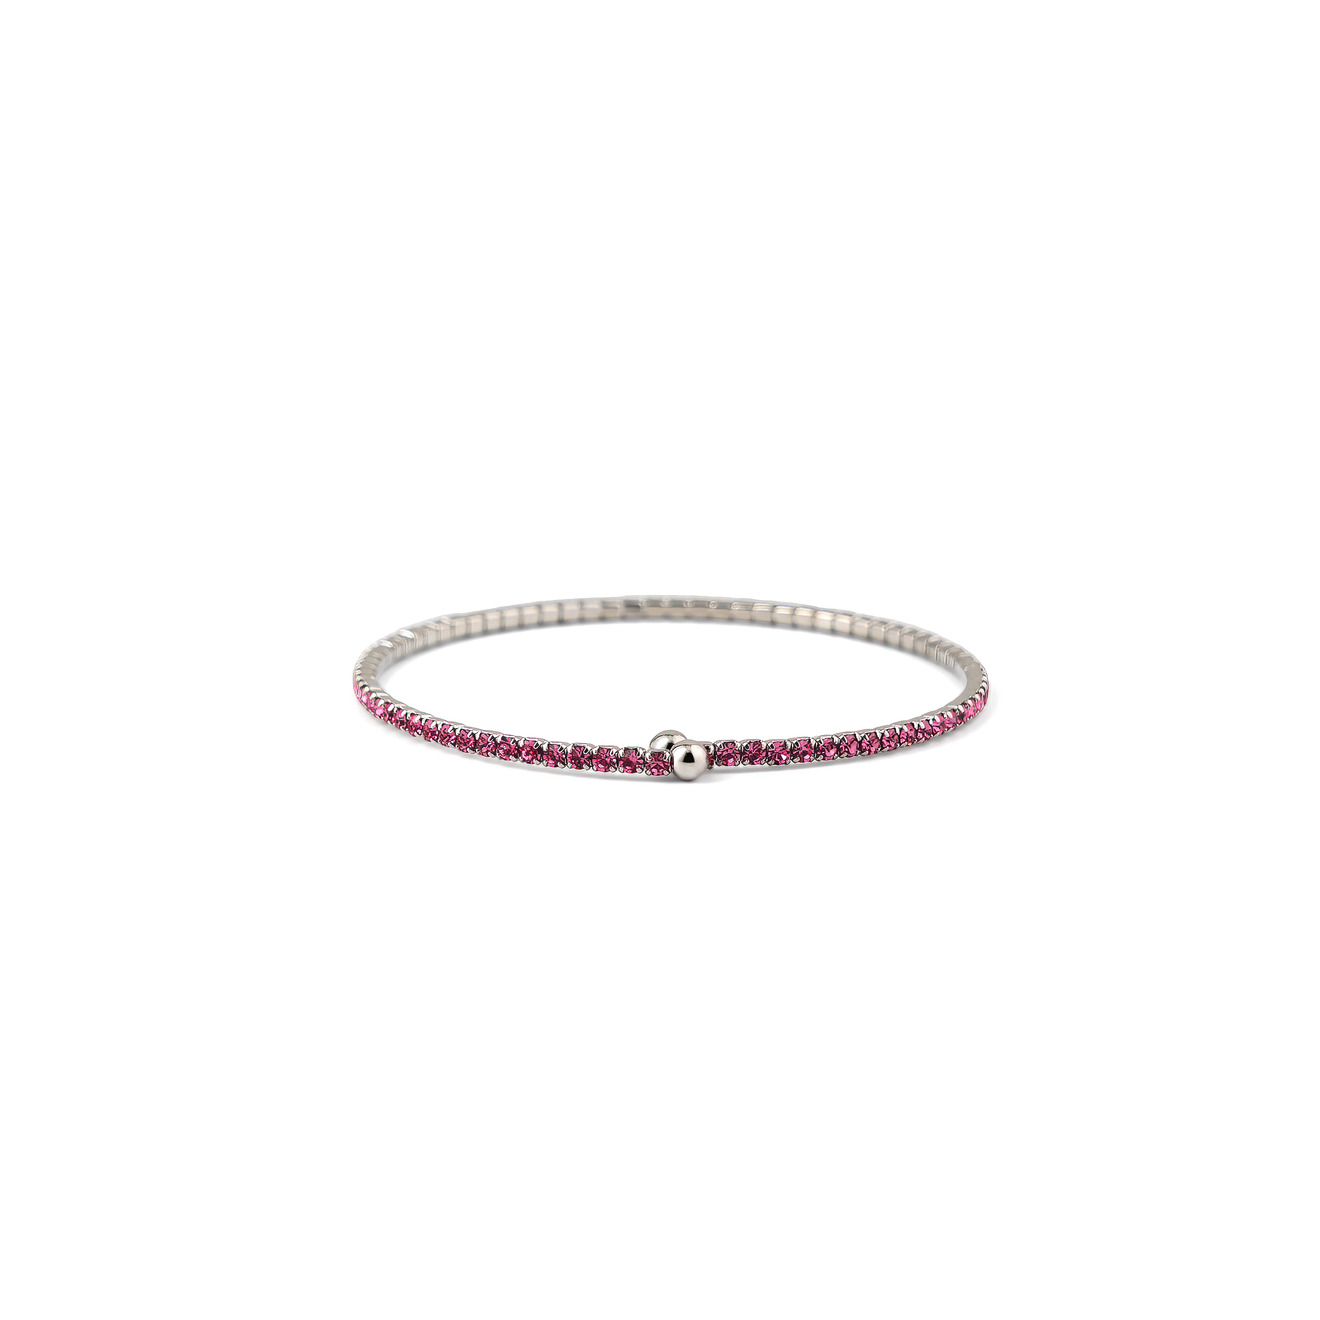 Herald Percy Серебристый браслет с ярко-розовыми кристаллами herald percy серебристый теннисный браслет с мелкими квадратными кристаллами